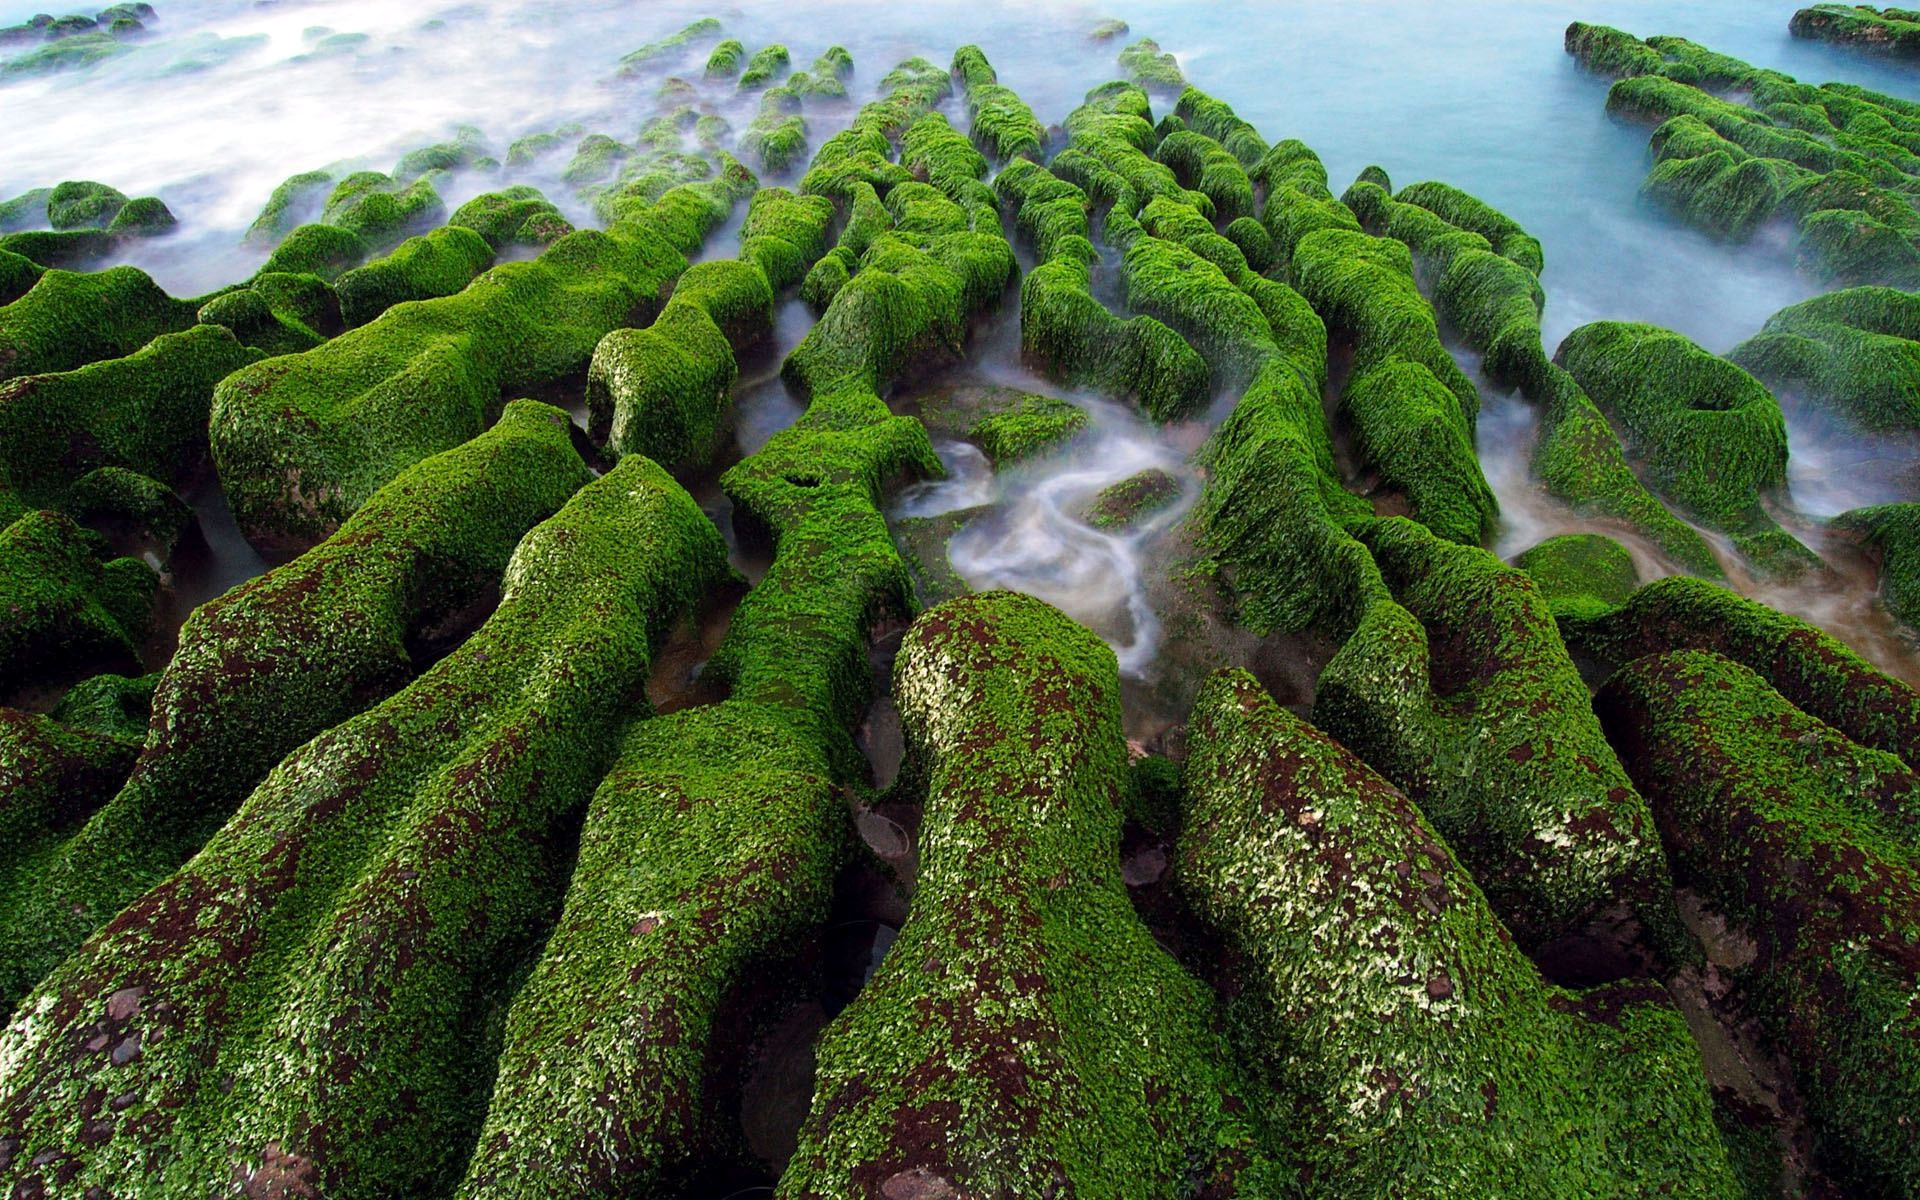 Green Rocks by the Ocean HD Wallpaper